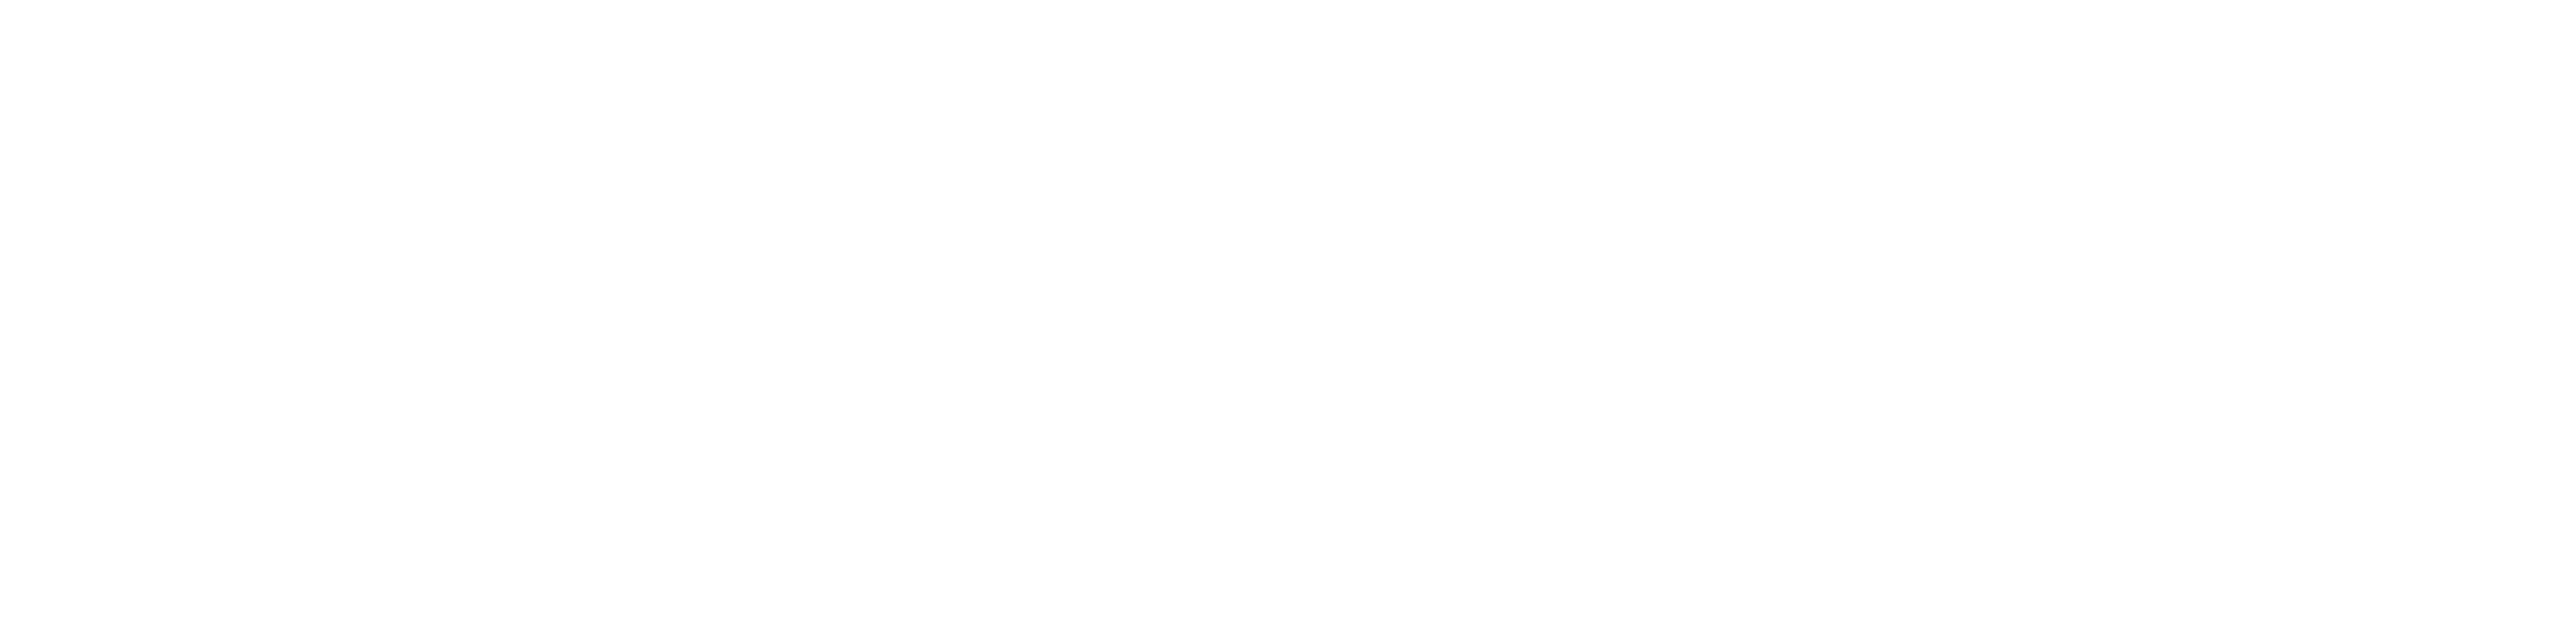 Martillo Workshop